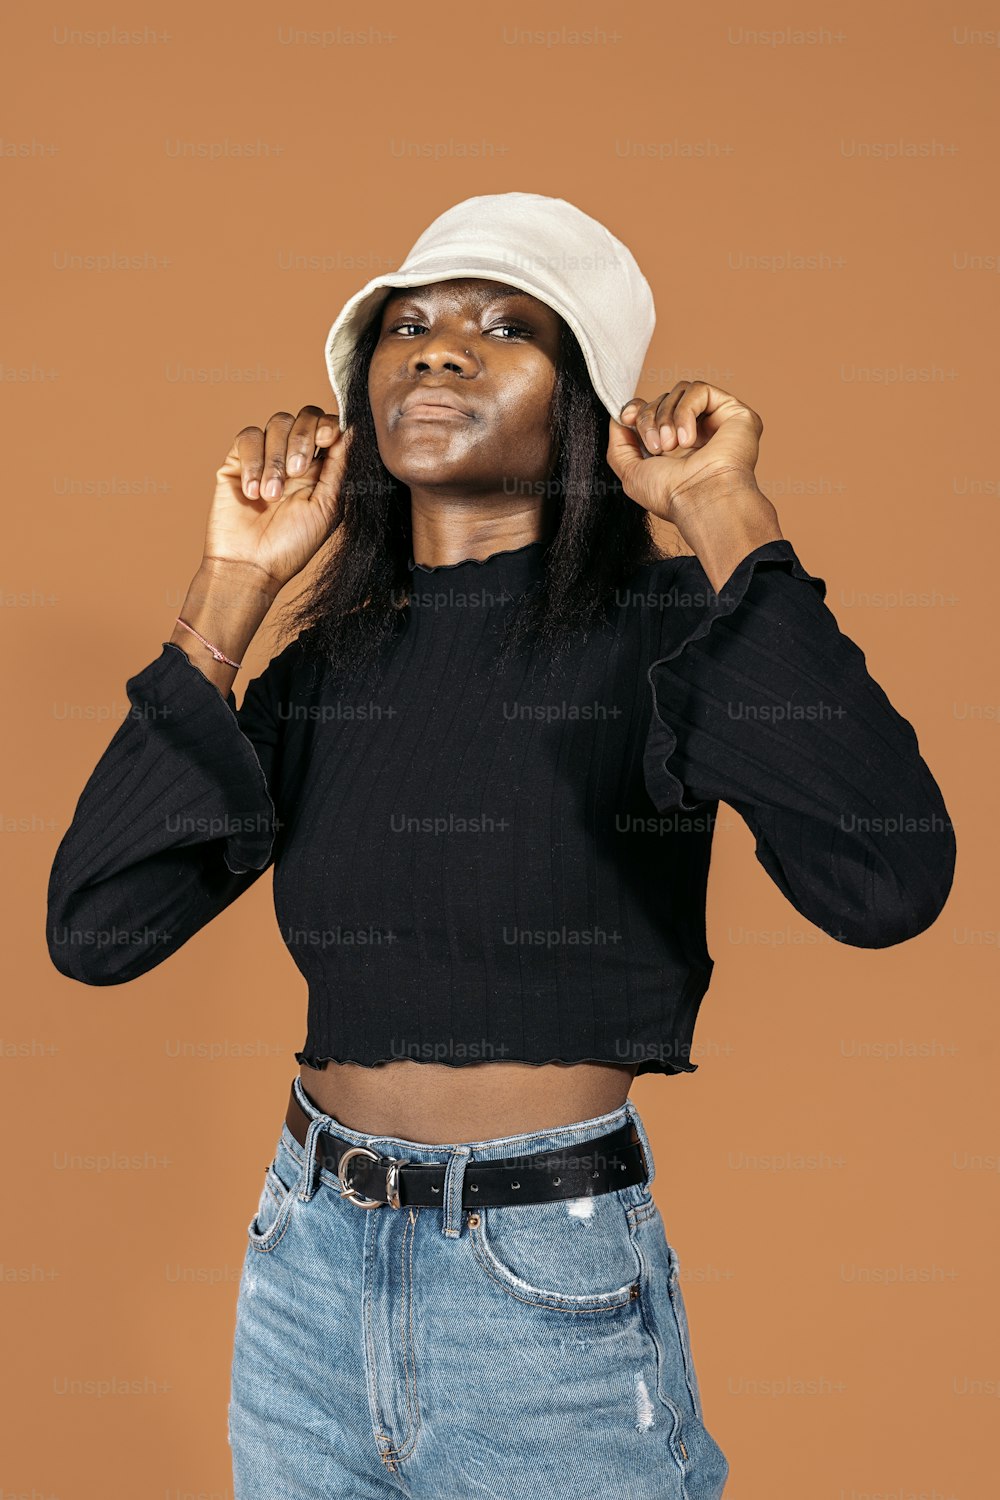 Foto de banco de imagens da menina preta legal que usa o chapéu posando no estúdio fotografada contra o fundo marrom.